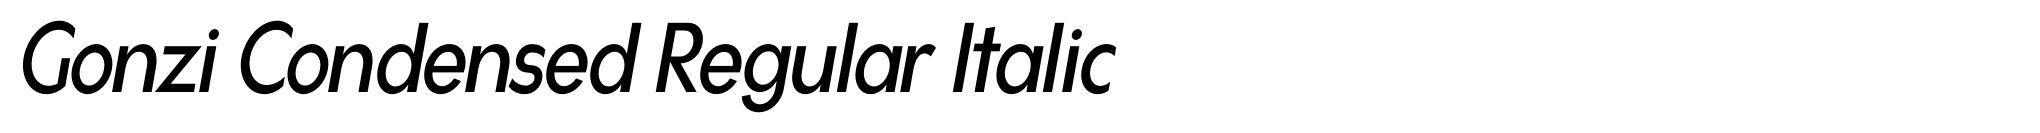 Gonzi Condensed Regular Italic image